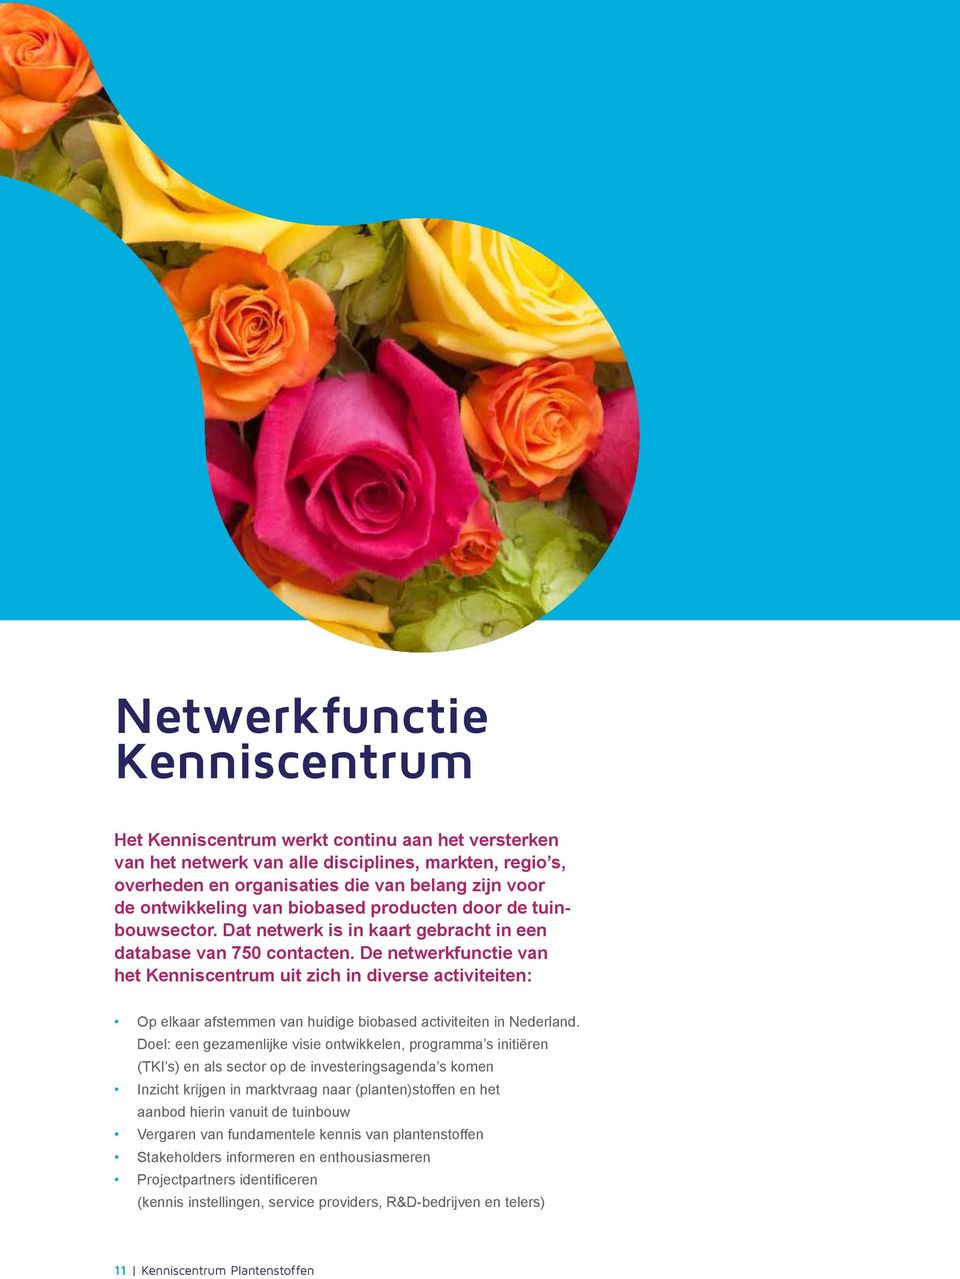 De netwerkfunctie van het Kenniscentrum uit zich in diverse activiteiten: Op elkaar afstemmen van huidige biobased activiteiten in Nederland.